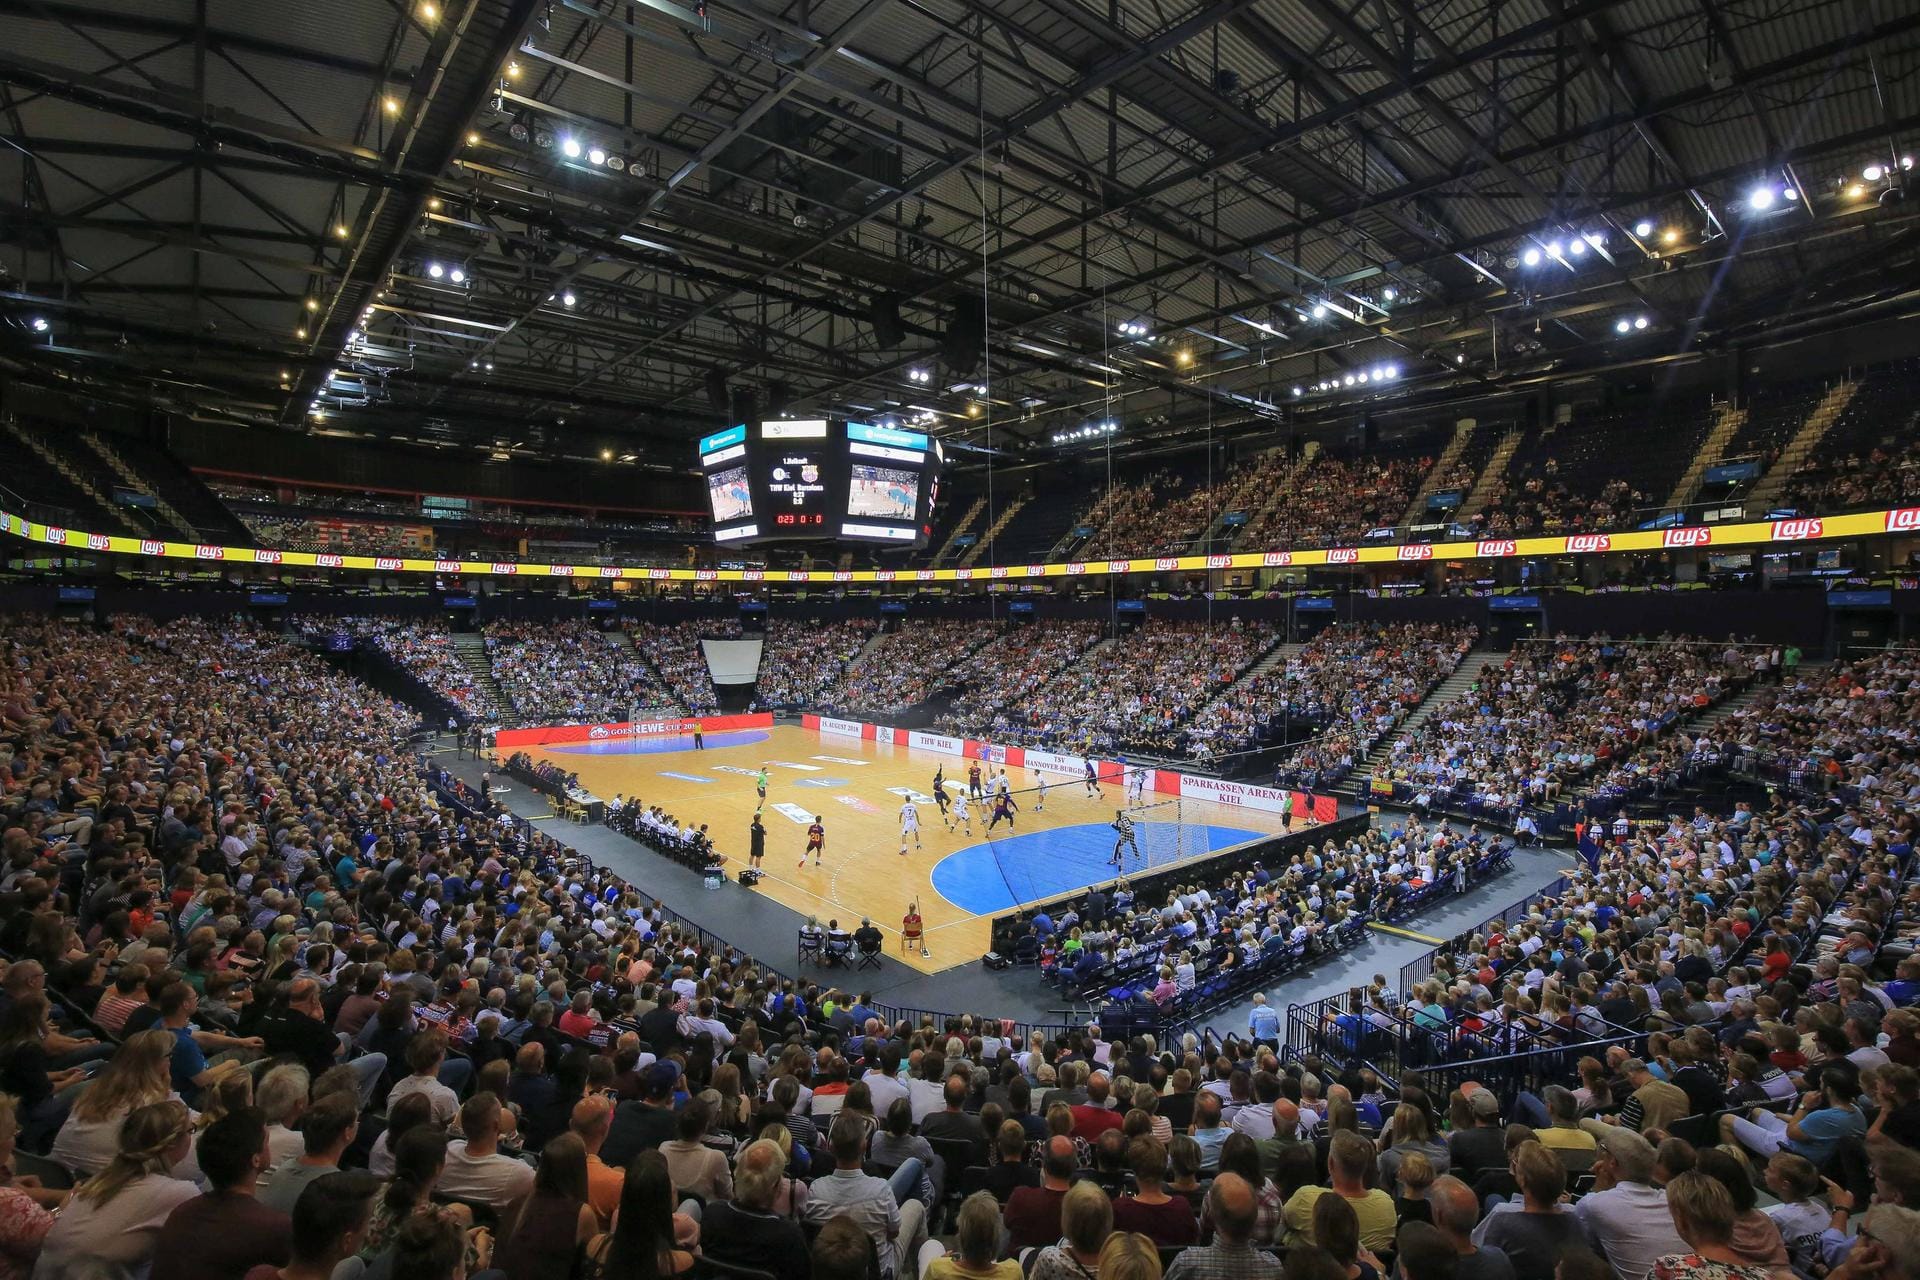 Nachdem jahrelang der HSV Hamburg (Handball) und die Hamburg Freezers (Eishockey) ihre Spiele in der Barclaycard Arena ausgetragen haben, finden hier aktuell größtenteils Konzerte statt.